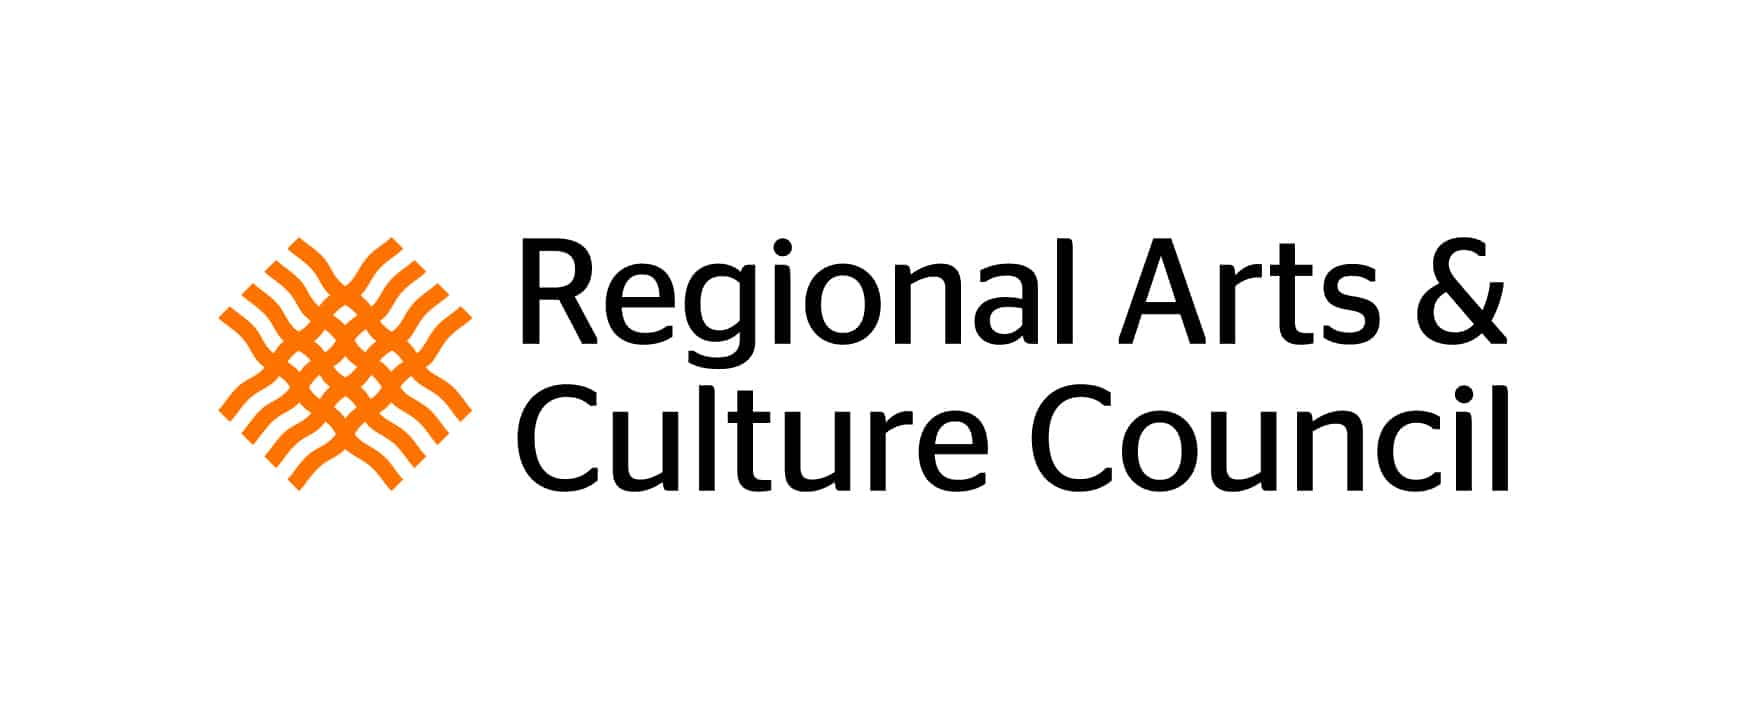 Regional Arts & Culture Council